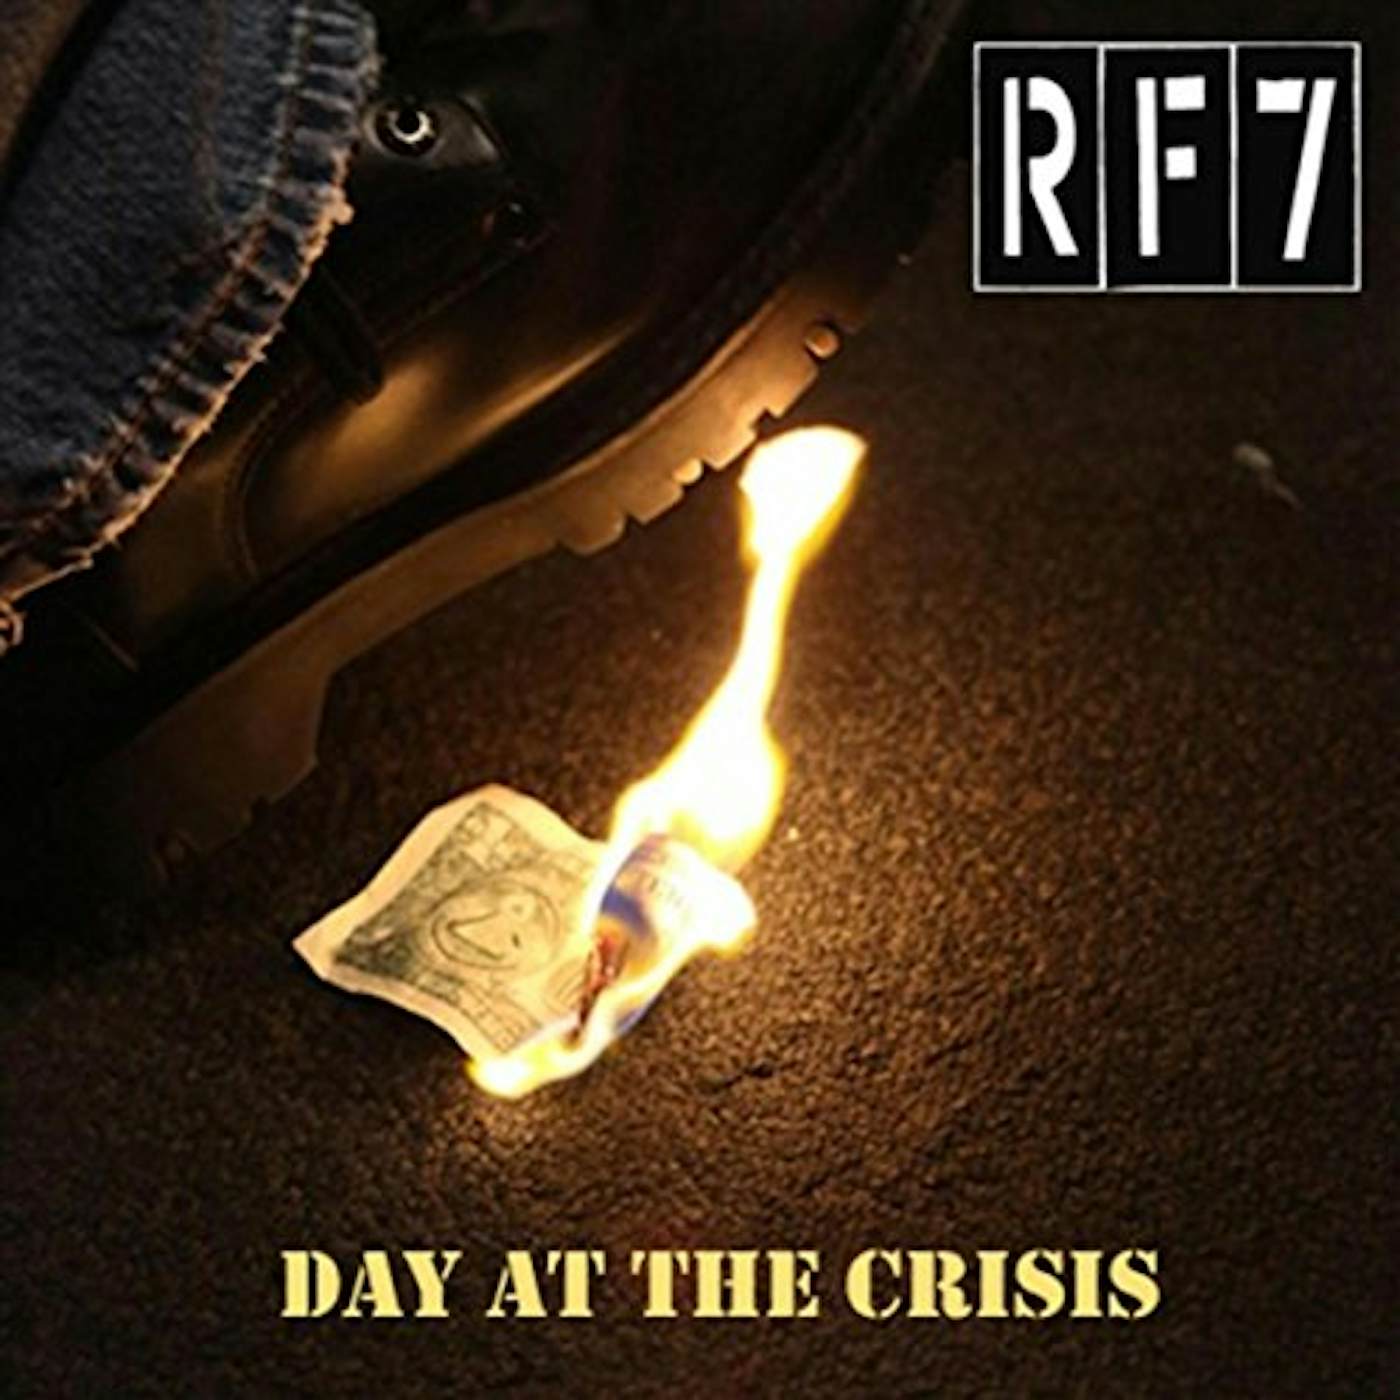 Rf7 DAY AT THE CRISIS CD